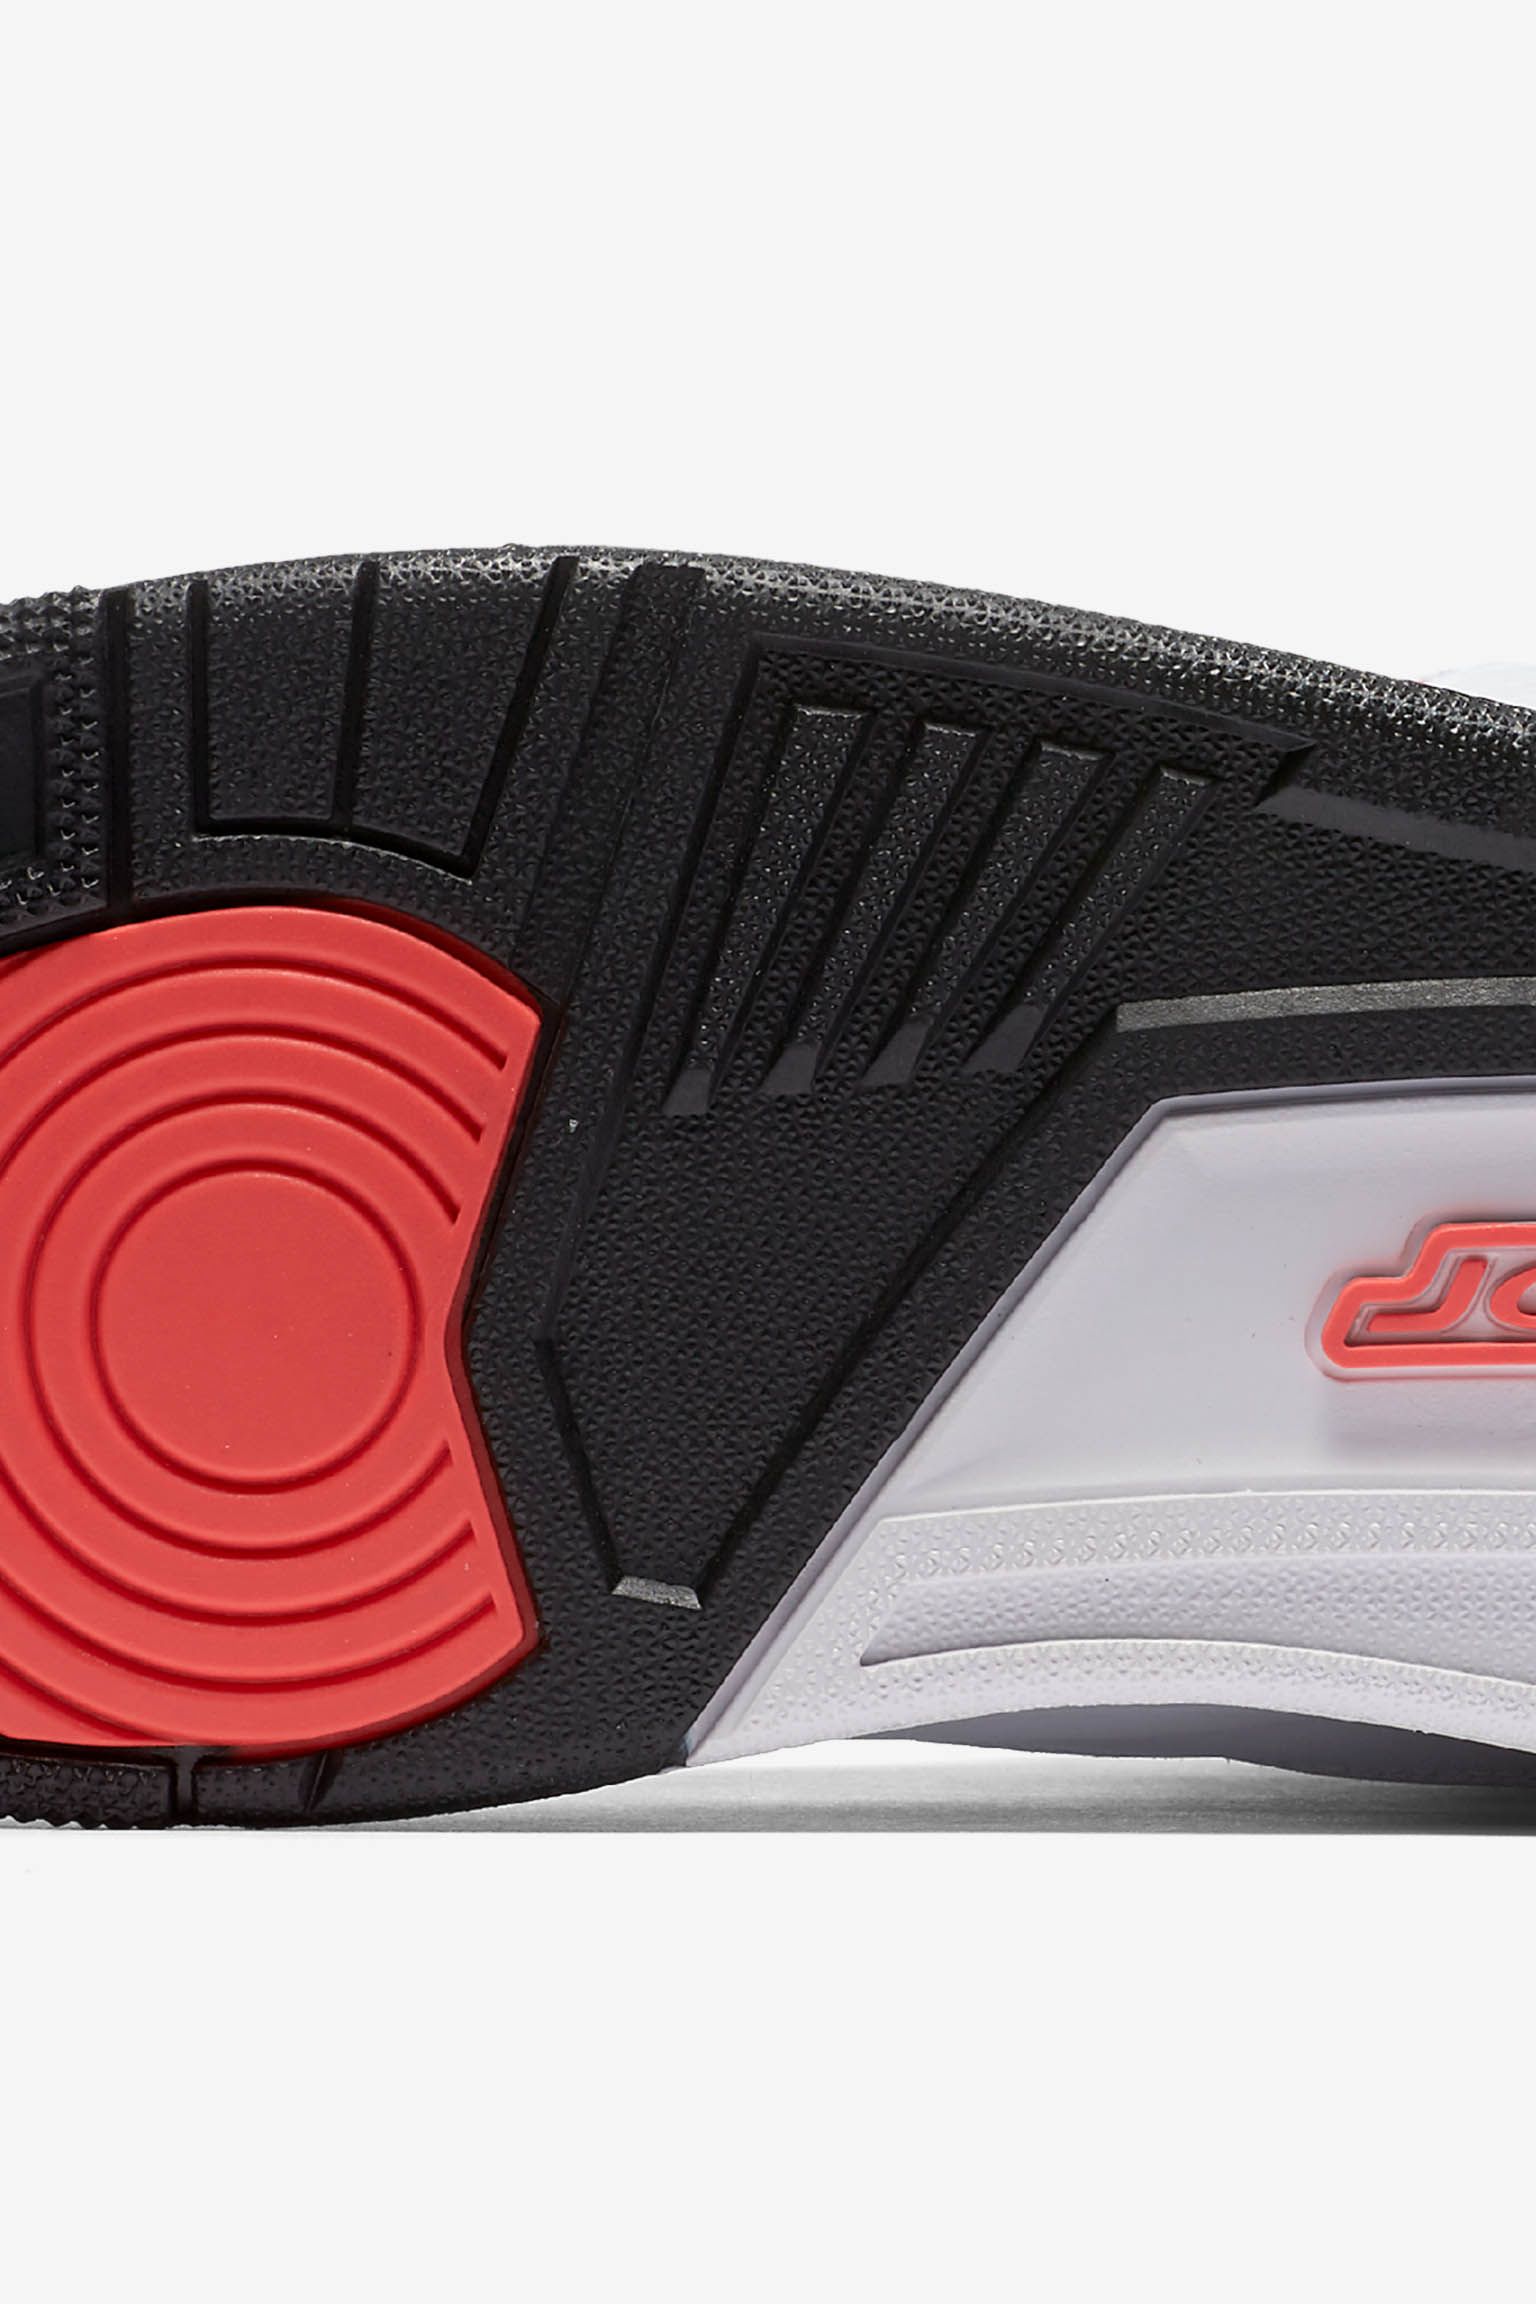 Air Jordan 3 Retro 'Infrared 23'. Release Date. Nike SNKRS GB